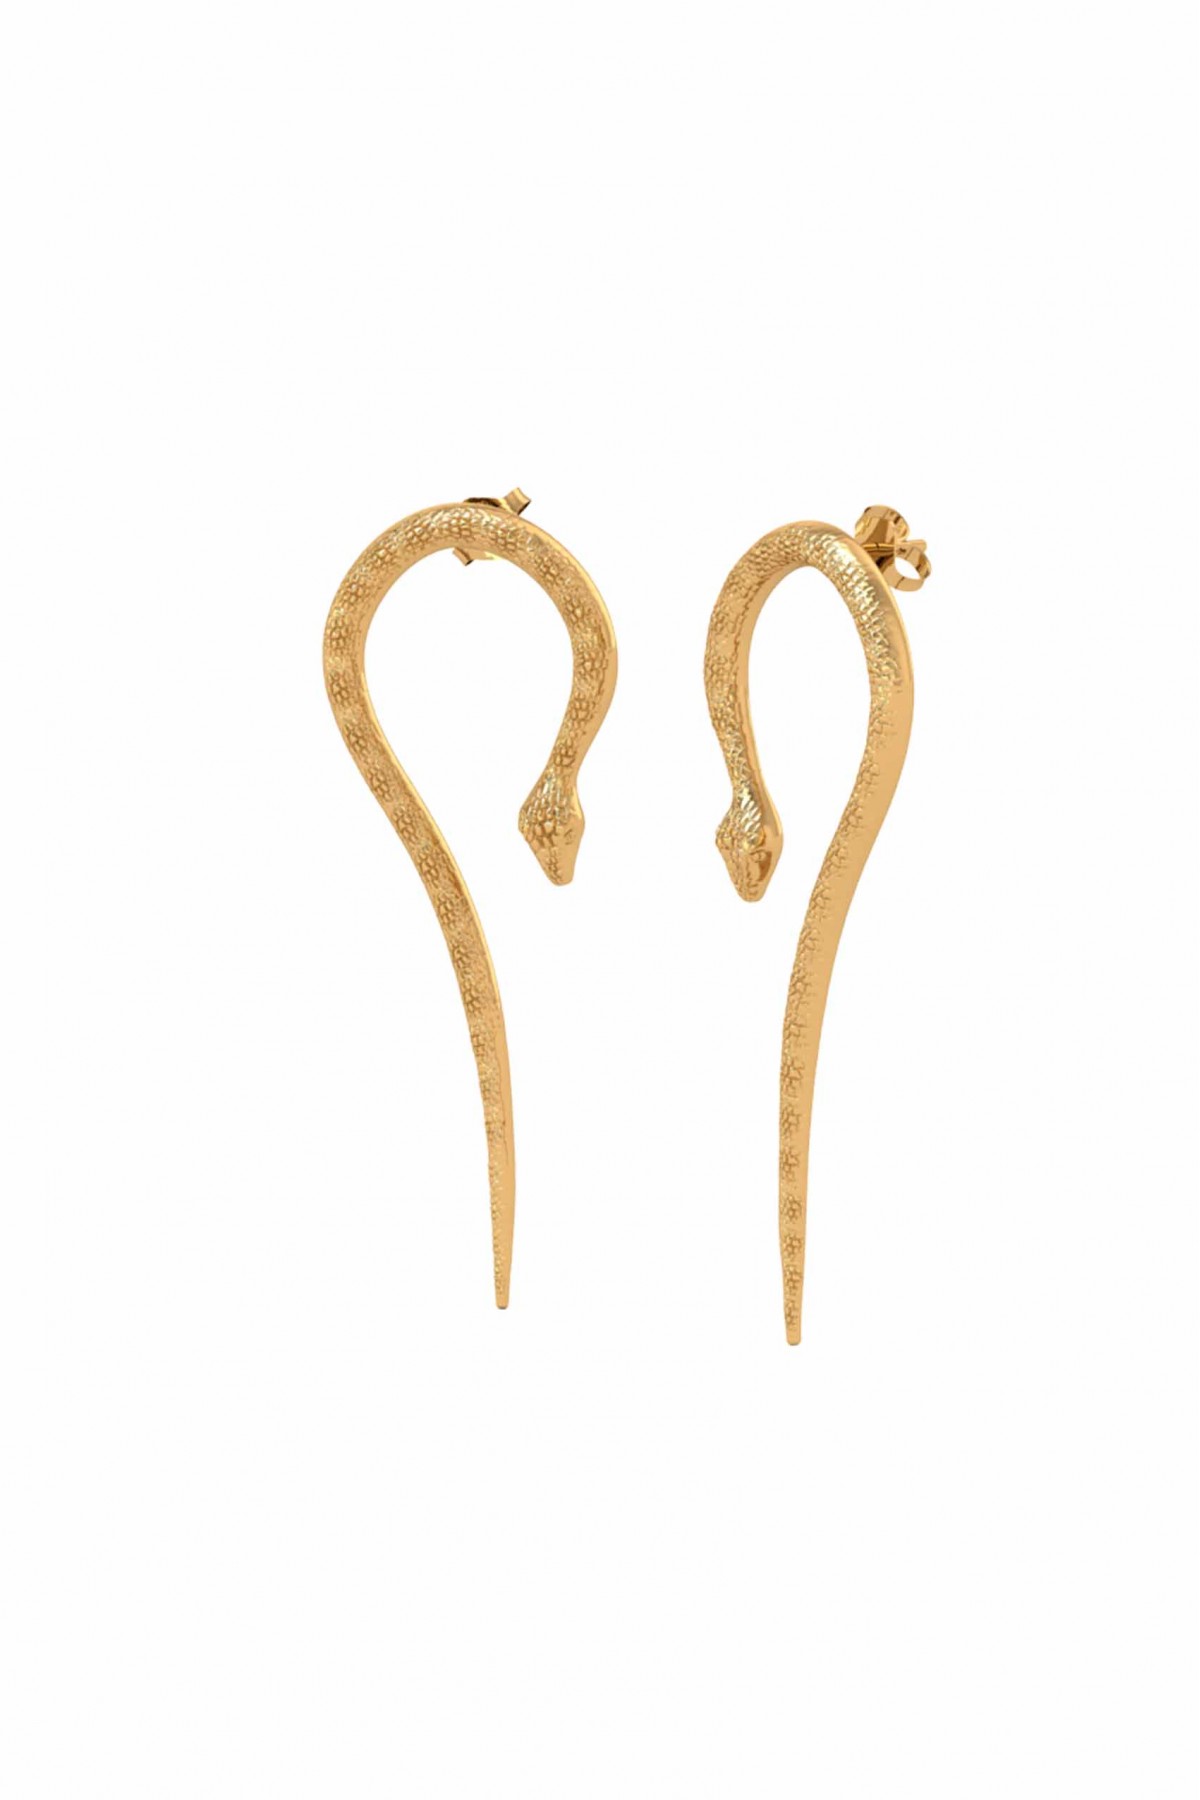 Cleo Snake Earrings